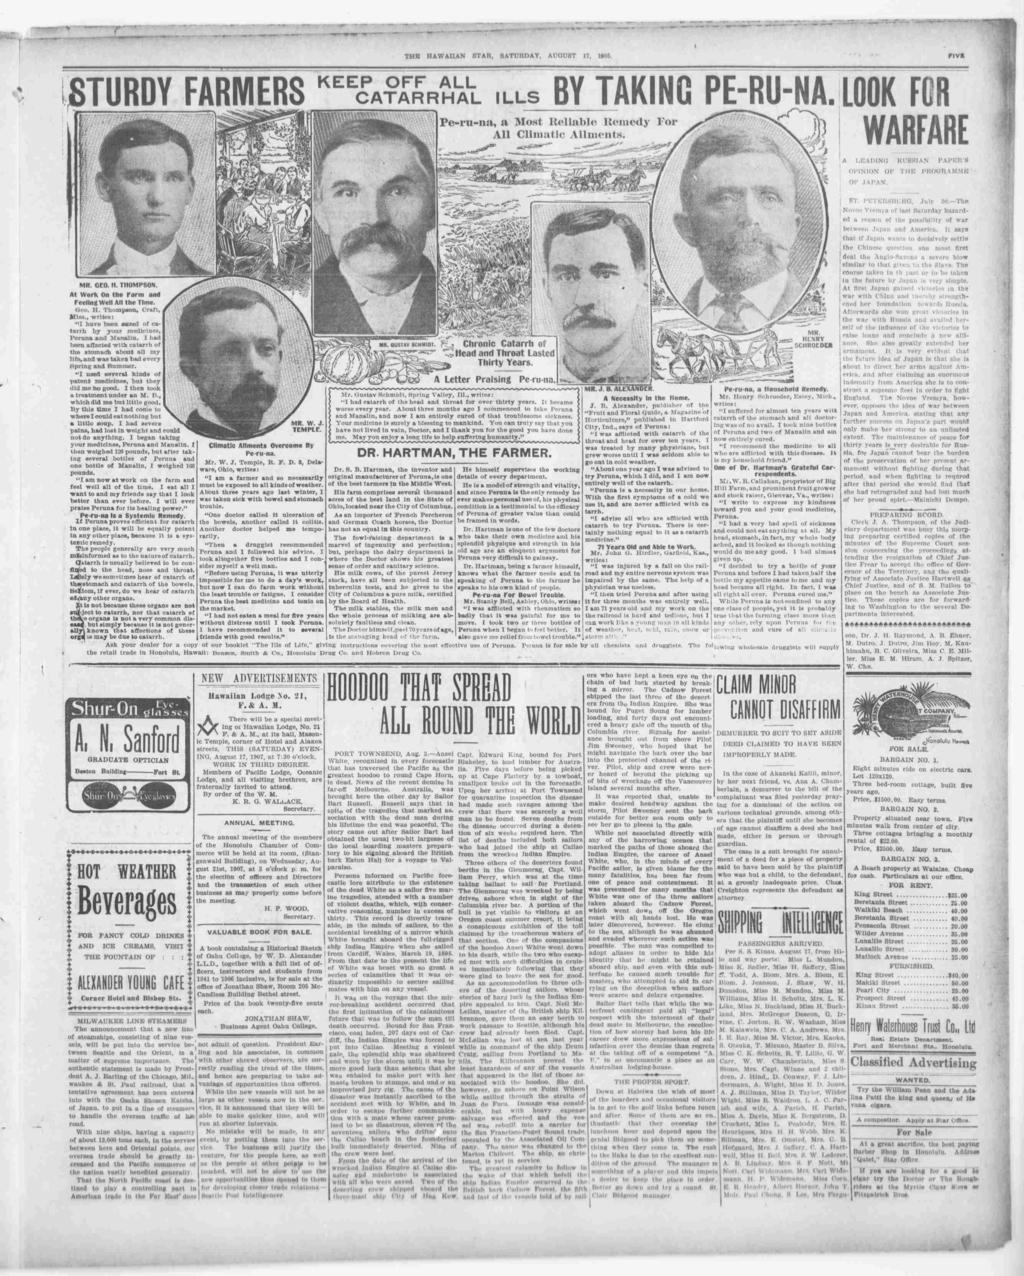 THE HAWAAN STAR, SATURDAY, AUGUST 17, 1905. FVE TURDY FARMER KEEP OFF ALL CATARRHAL LLS BY TAKNG PERU st WARFARE l A. l Sanford GRADUATE OPTCAN Bolton Buldng Fort,,W St.